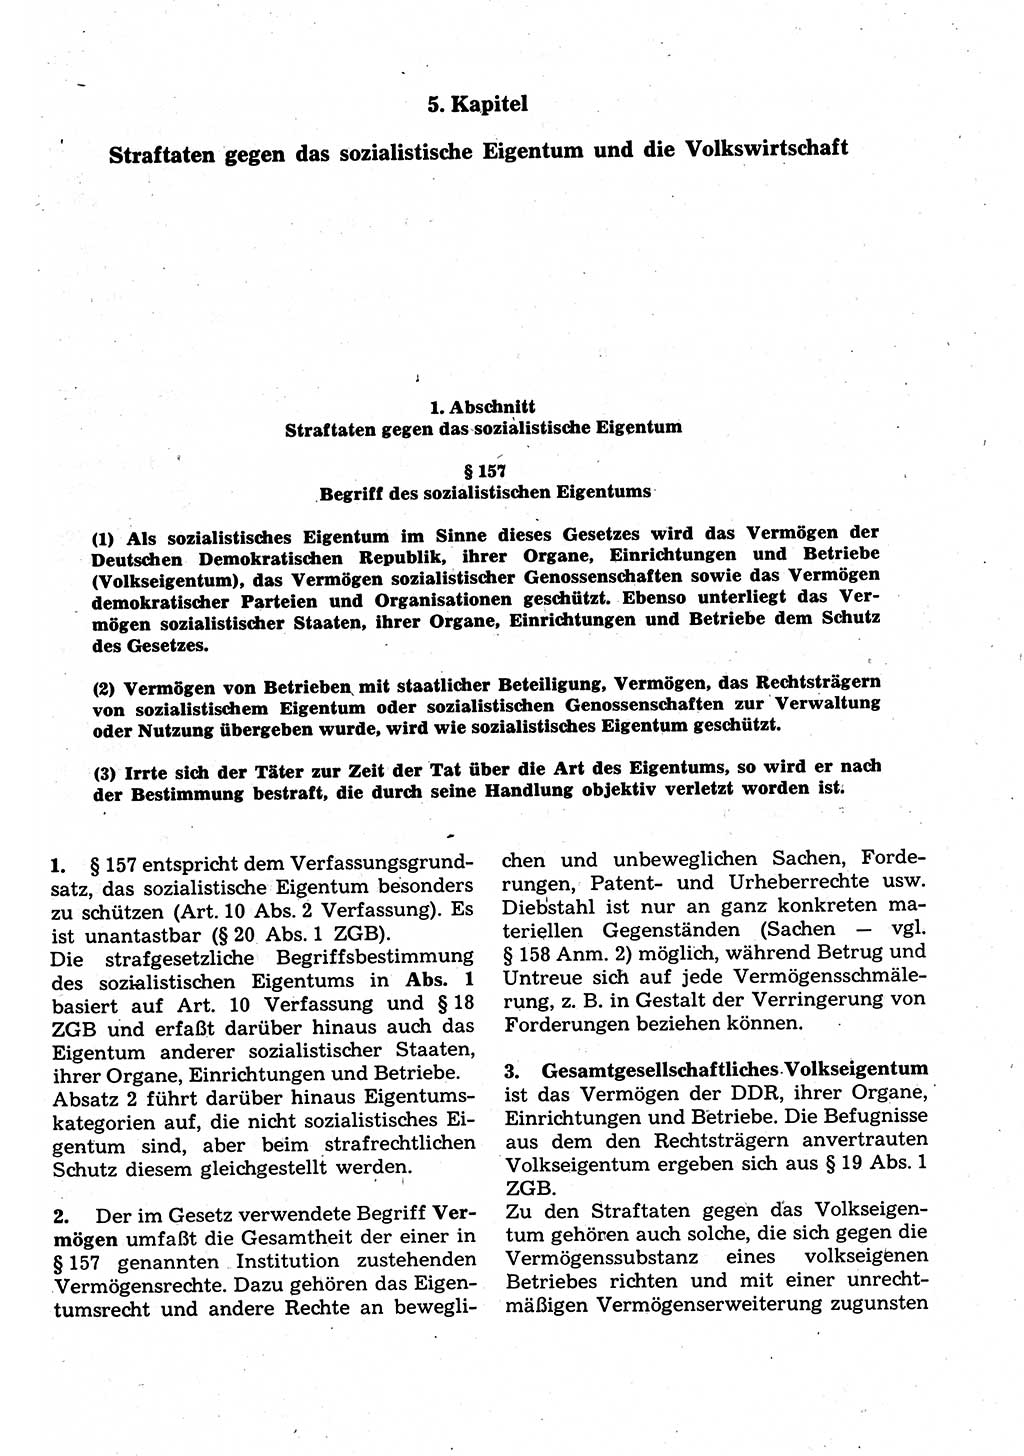 Strafrecht der Deutschen Demokratischen Republik (DDR), Kommentar zum Strafgesetzbuch (StGB) 1987, Seite 365 (Strafr. DDR Komm. StGB 1987, S. 365)